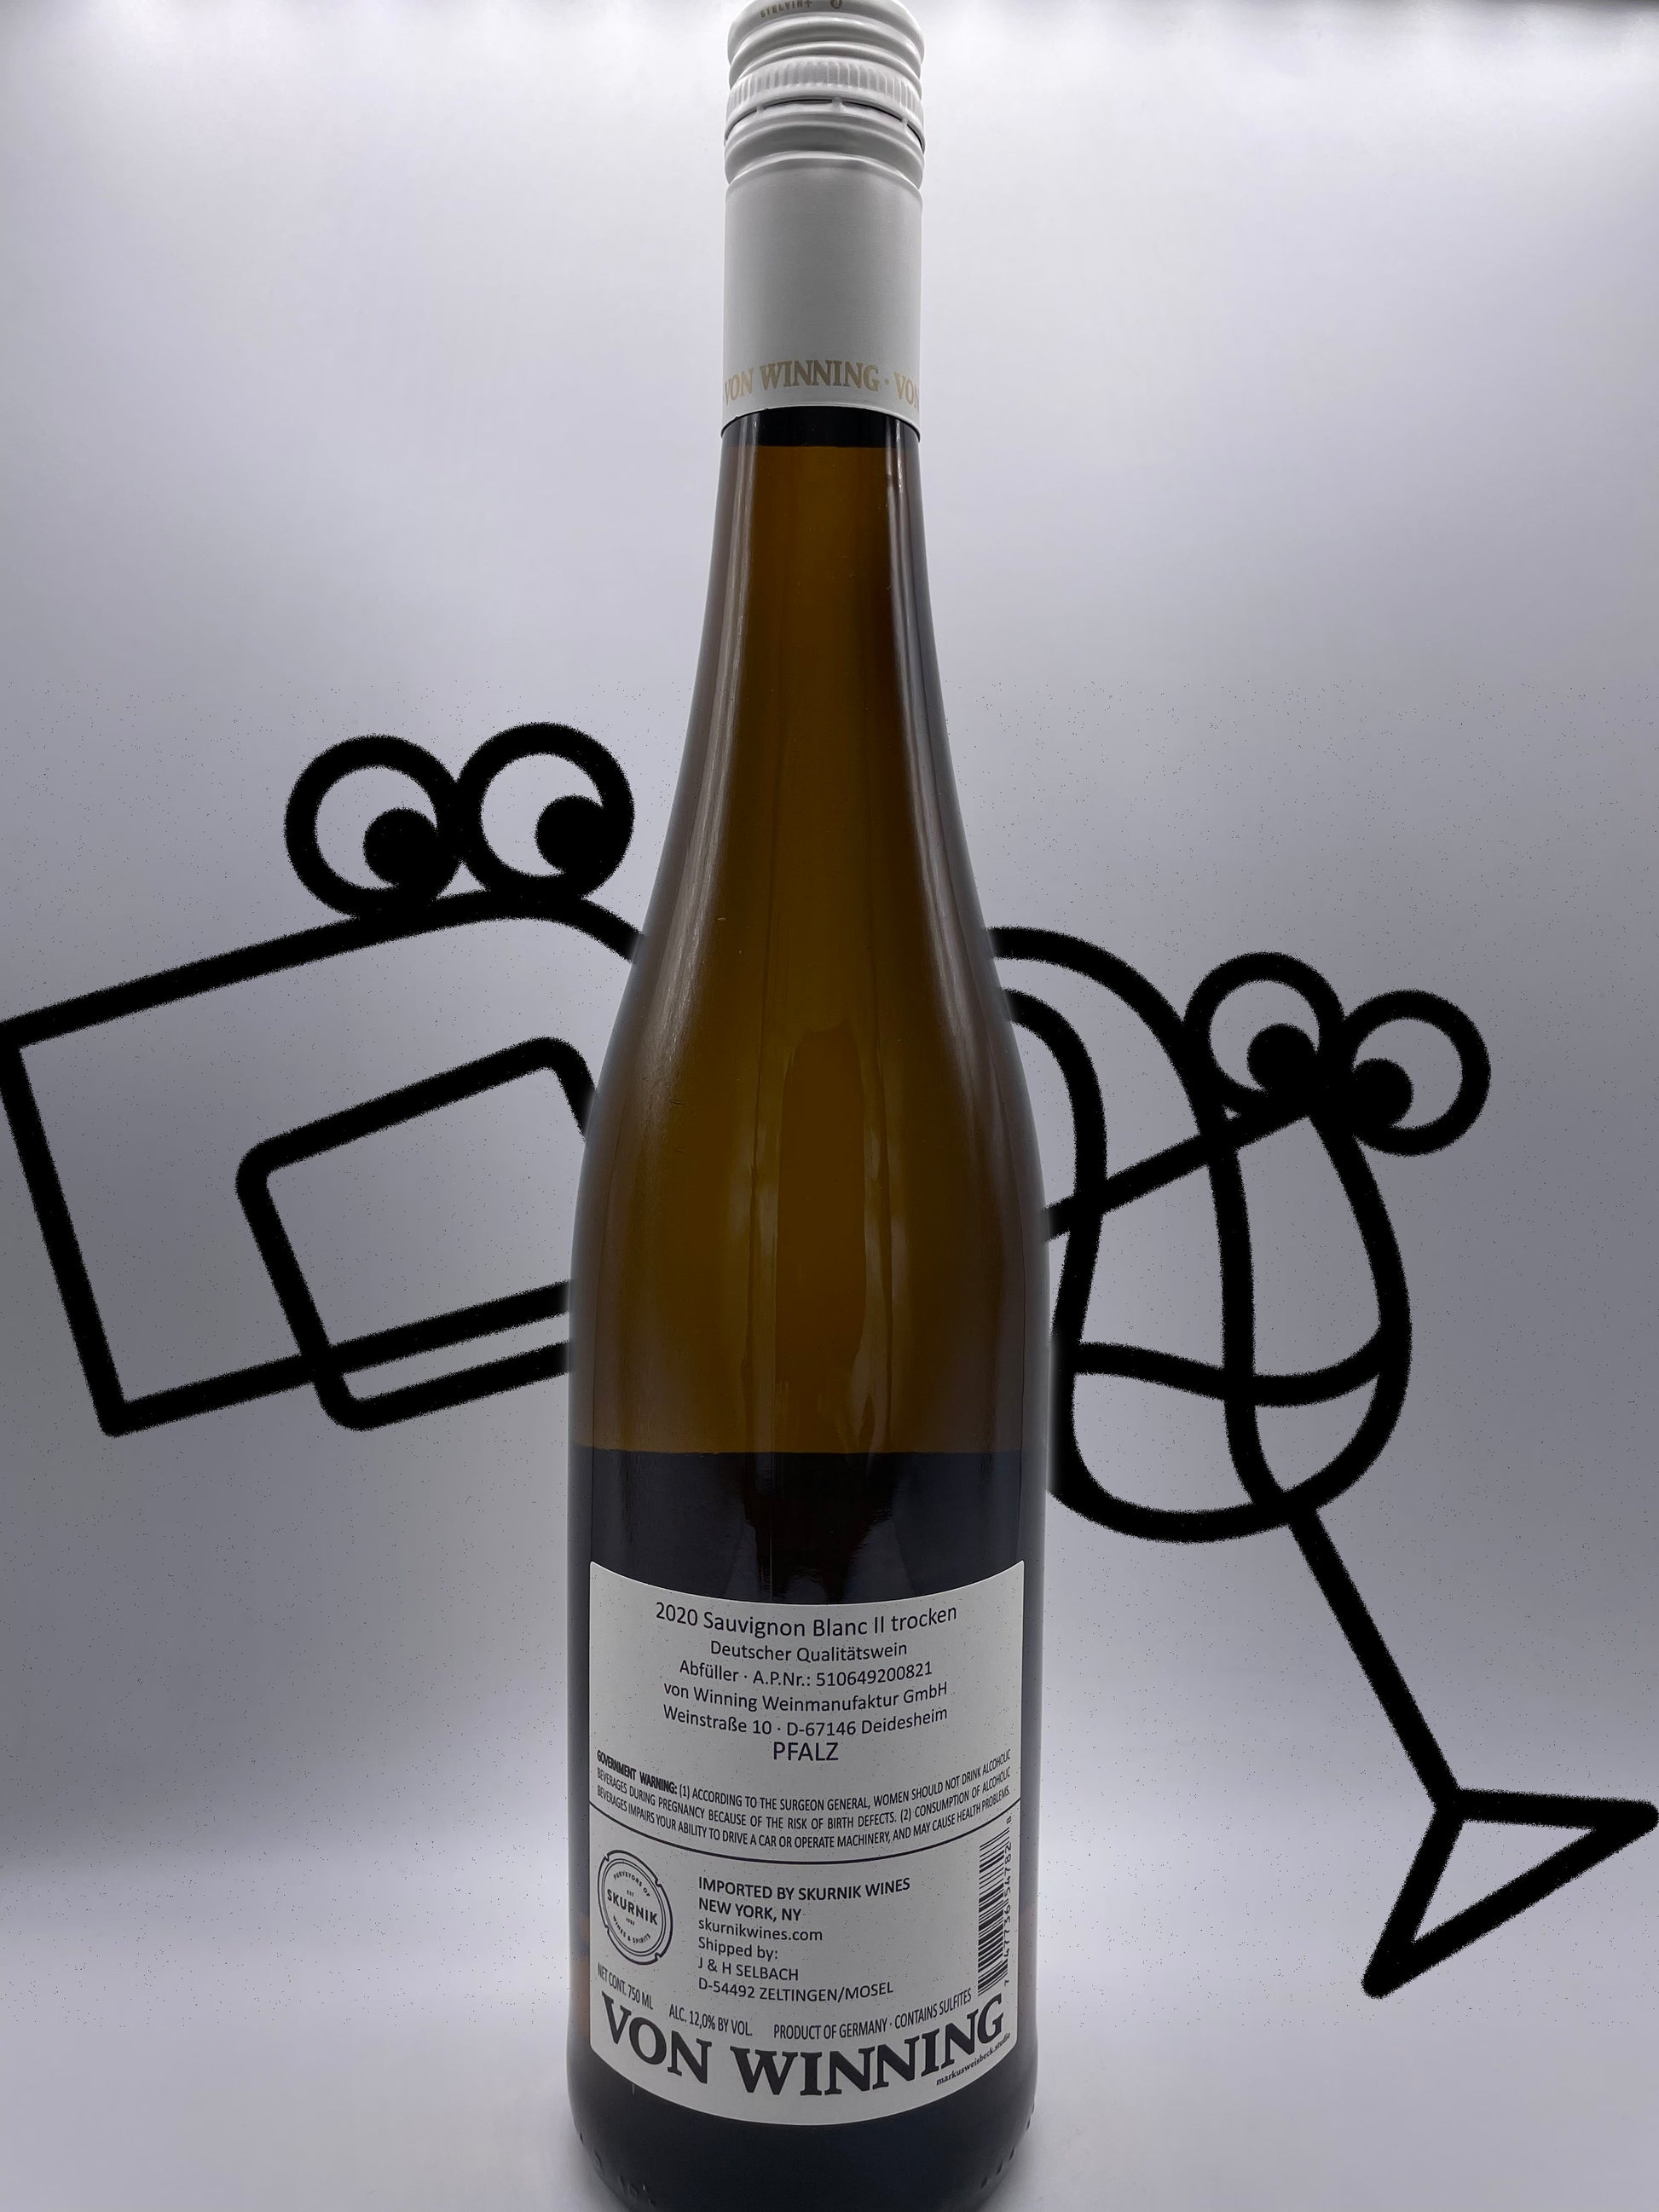 Von Winning Sauvignon Blanc 'II' 2020 Pfalz, Germany - Williston Park Wines & Spirits